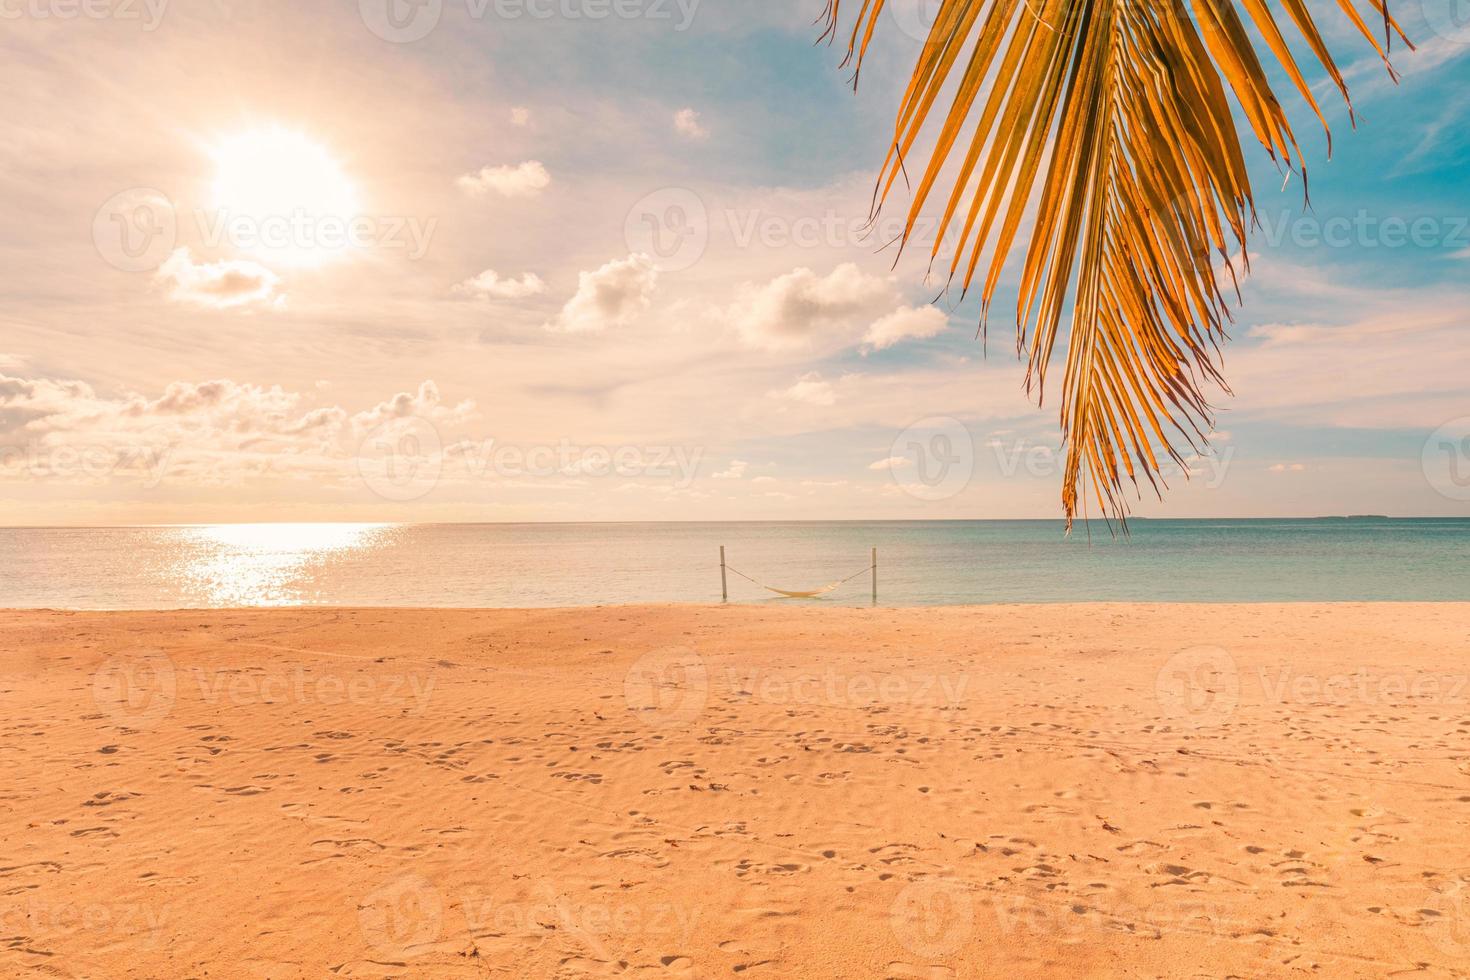 feuille de palmier au coucher du soleil avec un ciel coloré sur un paysage marin calme, vue sur le rivage en bord de mer. plage tropicale pittoresque, paysage d'été exotique. vacances, concept de vacances photo